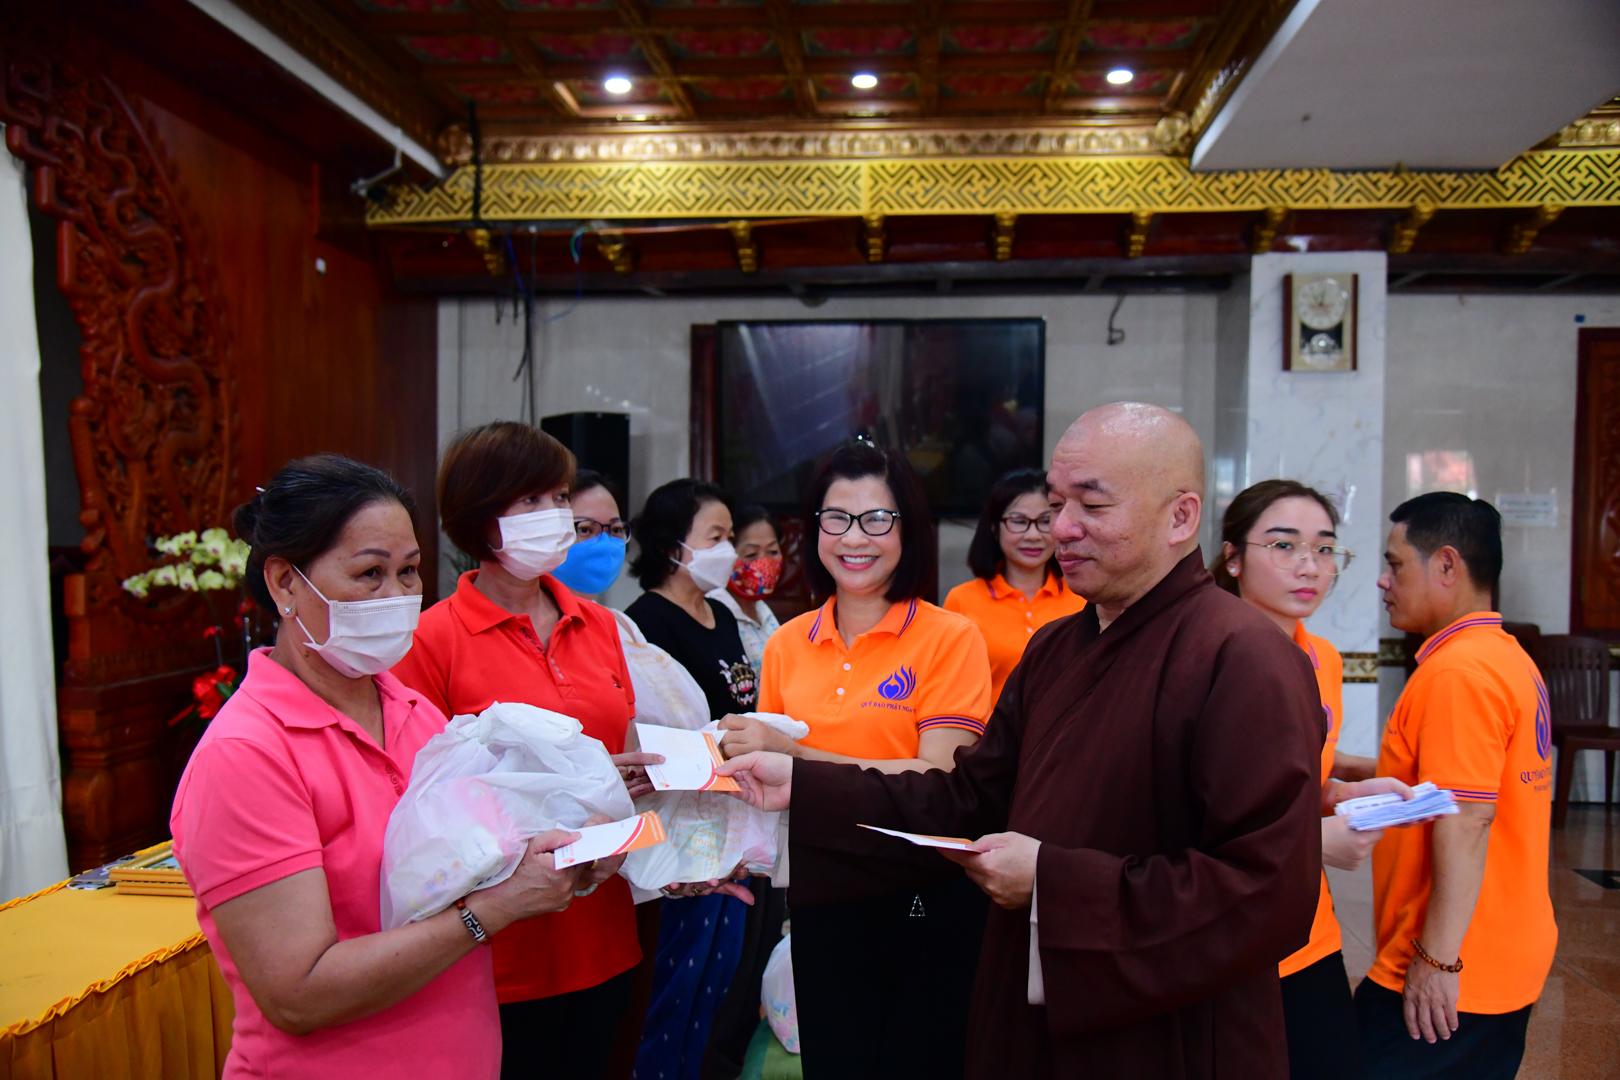 Chùa Giác Ngộ, Qũy Đạo Phật Ngày Nay mang xuân đến với 200 bà con khó khăn tại phường 2 quận 10